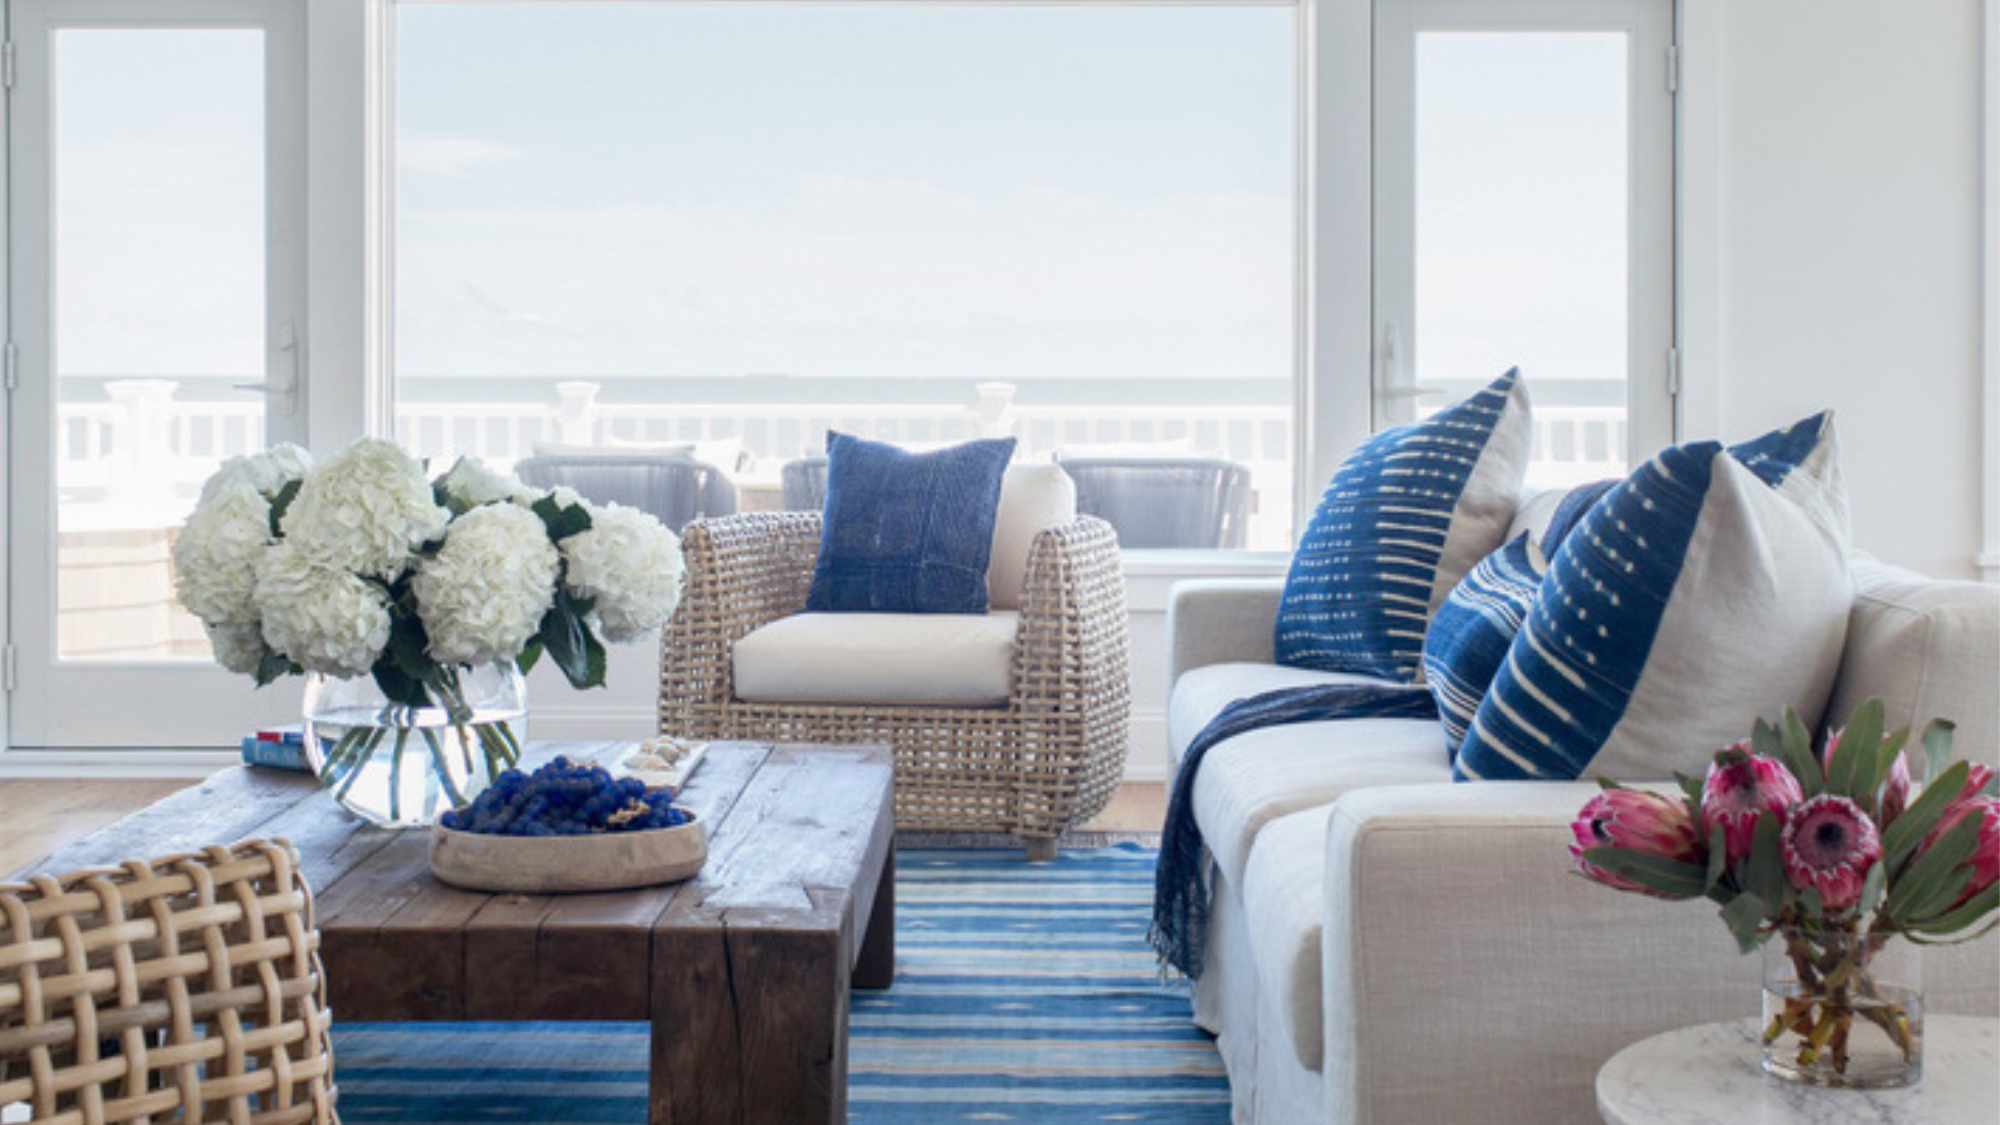 Thiết kế phòng khách mùa hè với những điểm nhấn màu xanh da trời dịu mát. Ảnh: Decoist